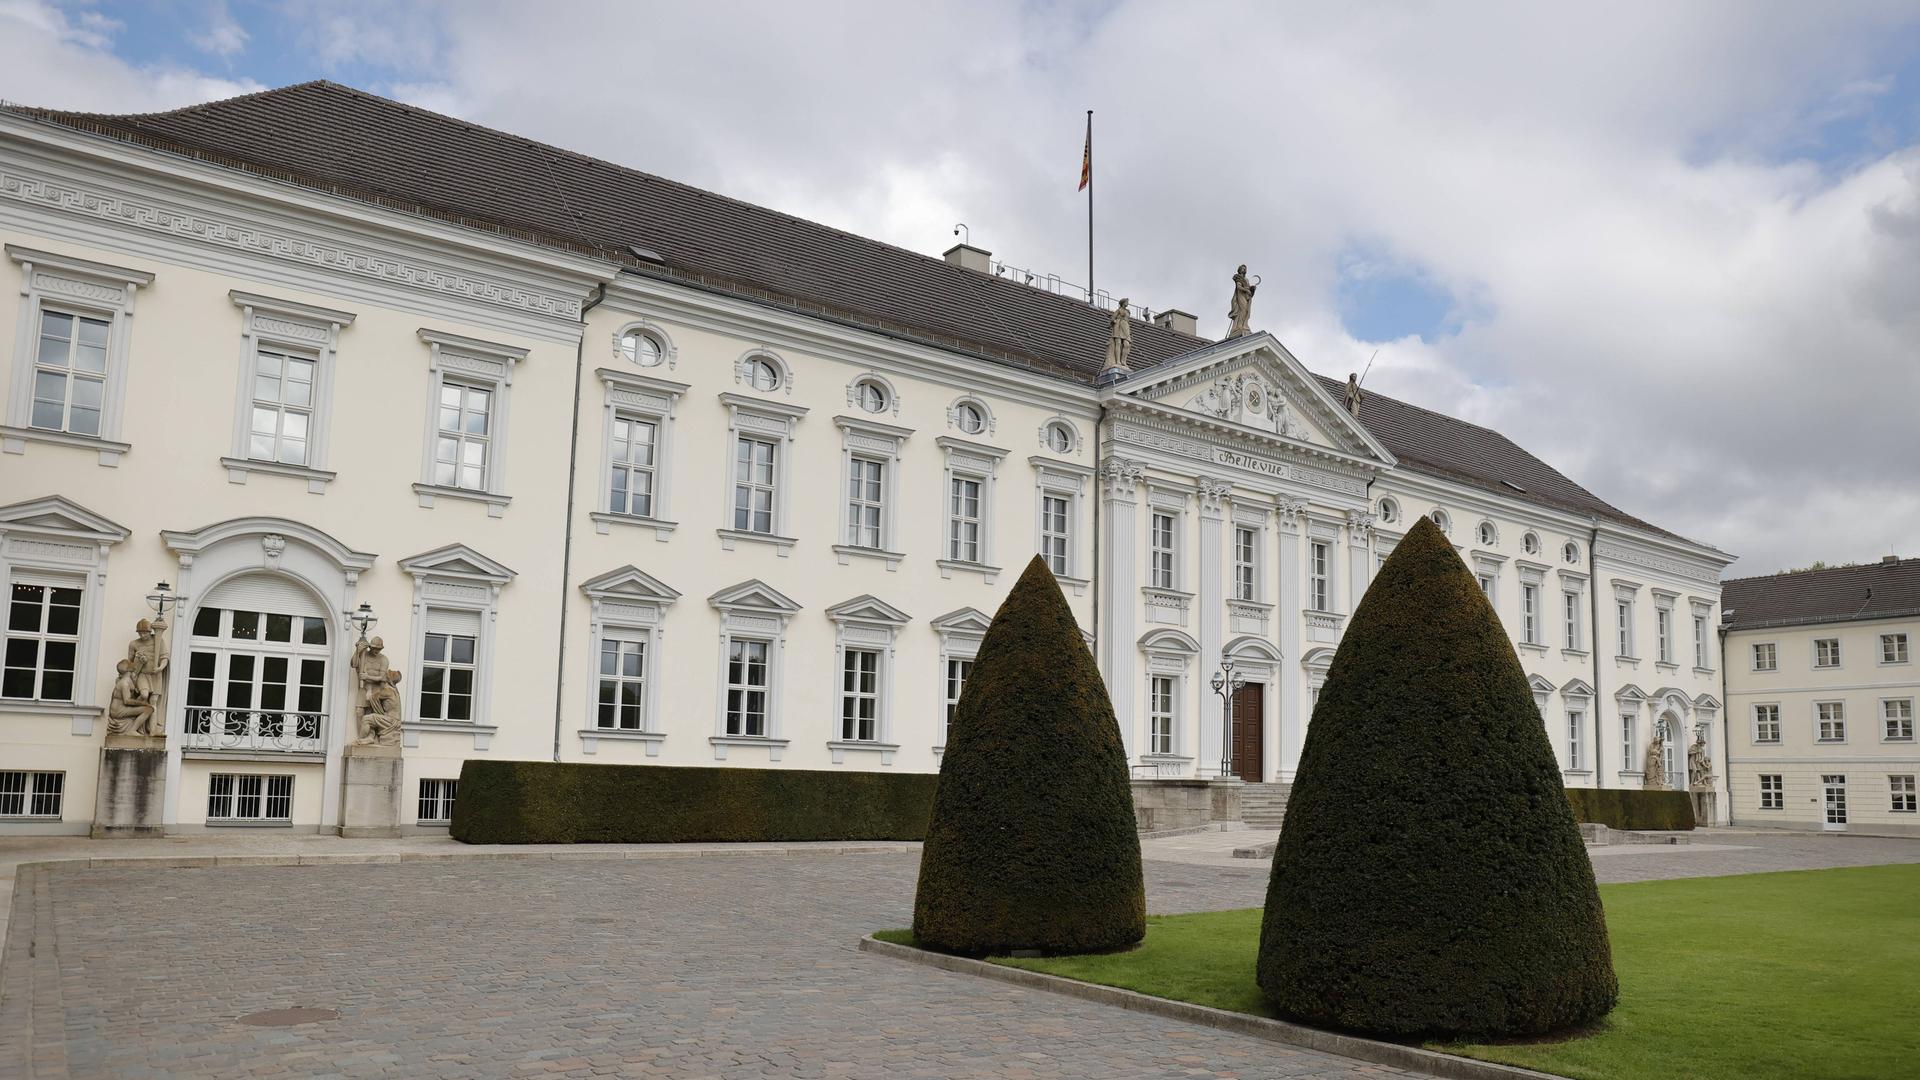 Schloss Bellevue in Berlin, der Amtssitz des Bundespräsidenten